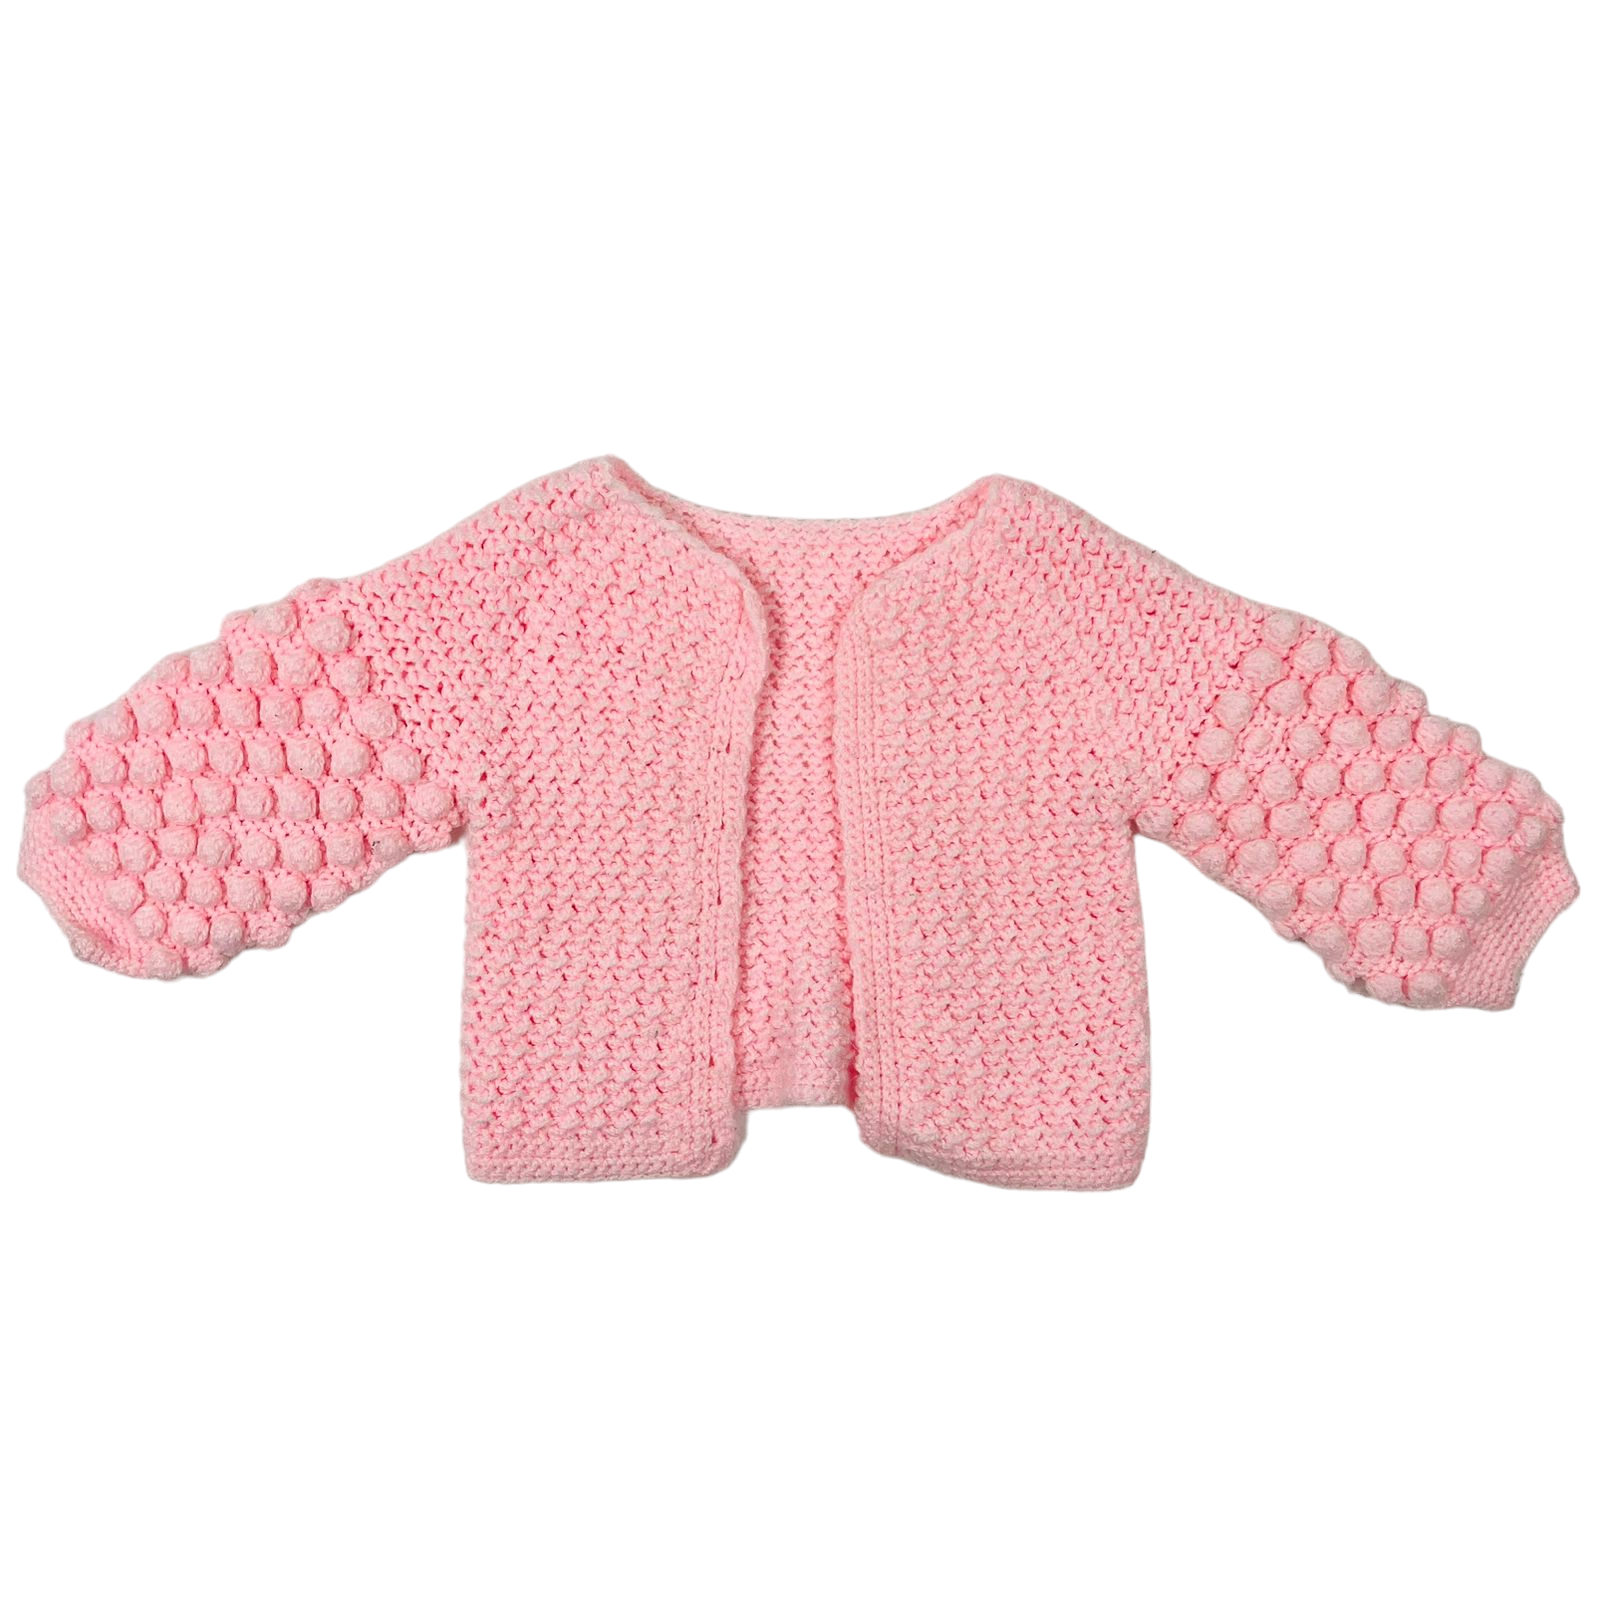 Chaleco lana rosa con diseños de pelotitas